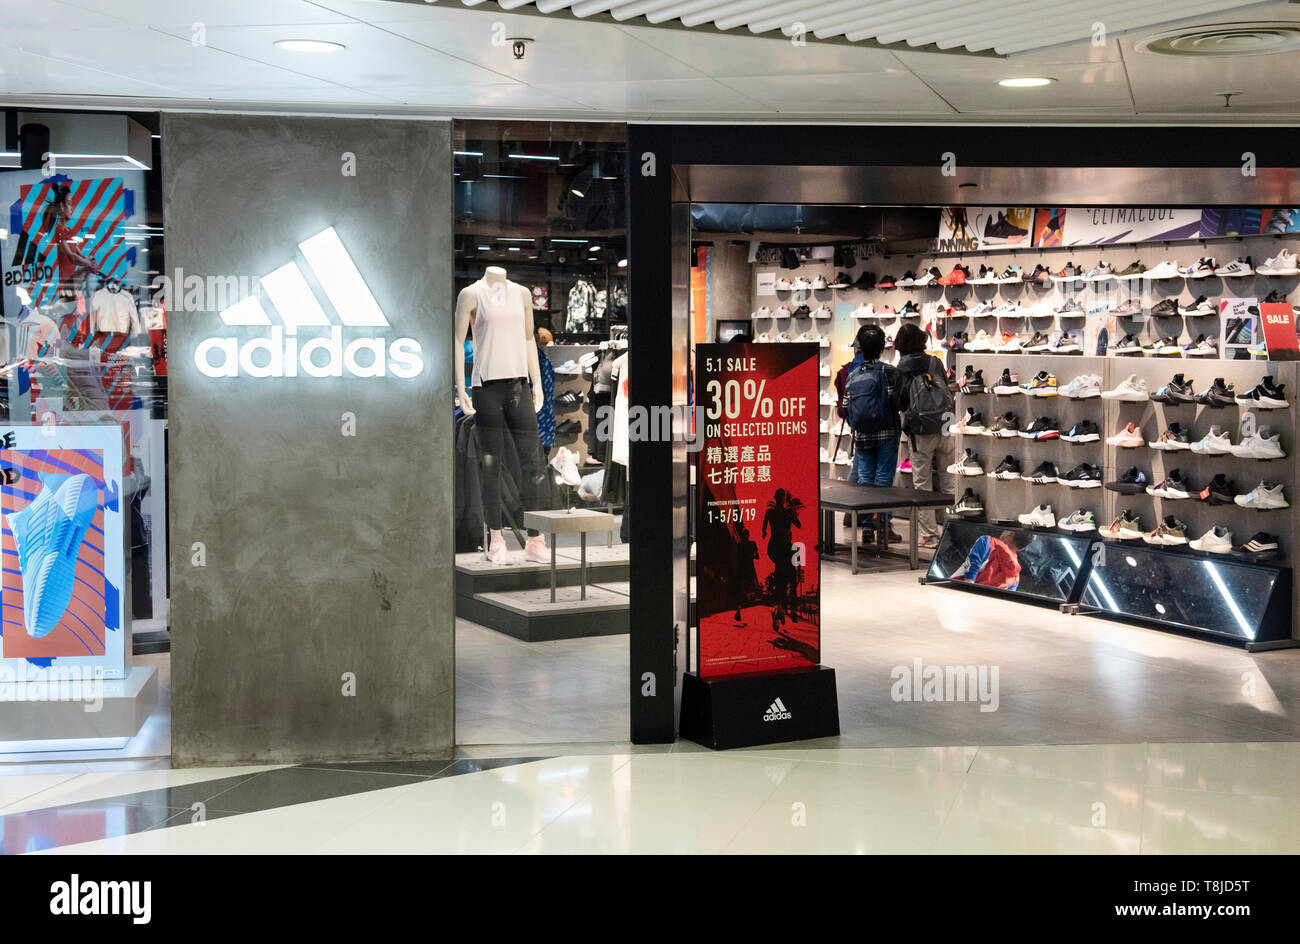 Tienda De Deportes Adidas, Buy Now, Clearance, 57% OFF,  www.busformentera.com